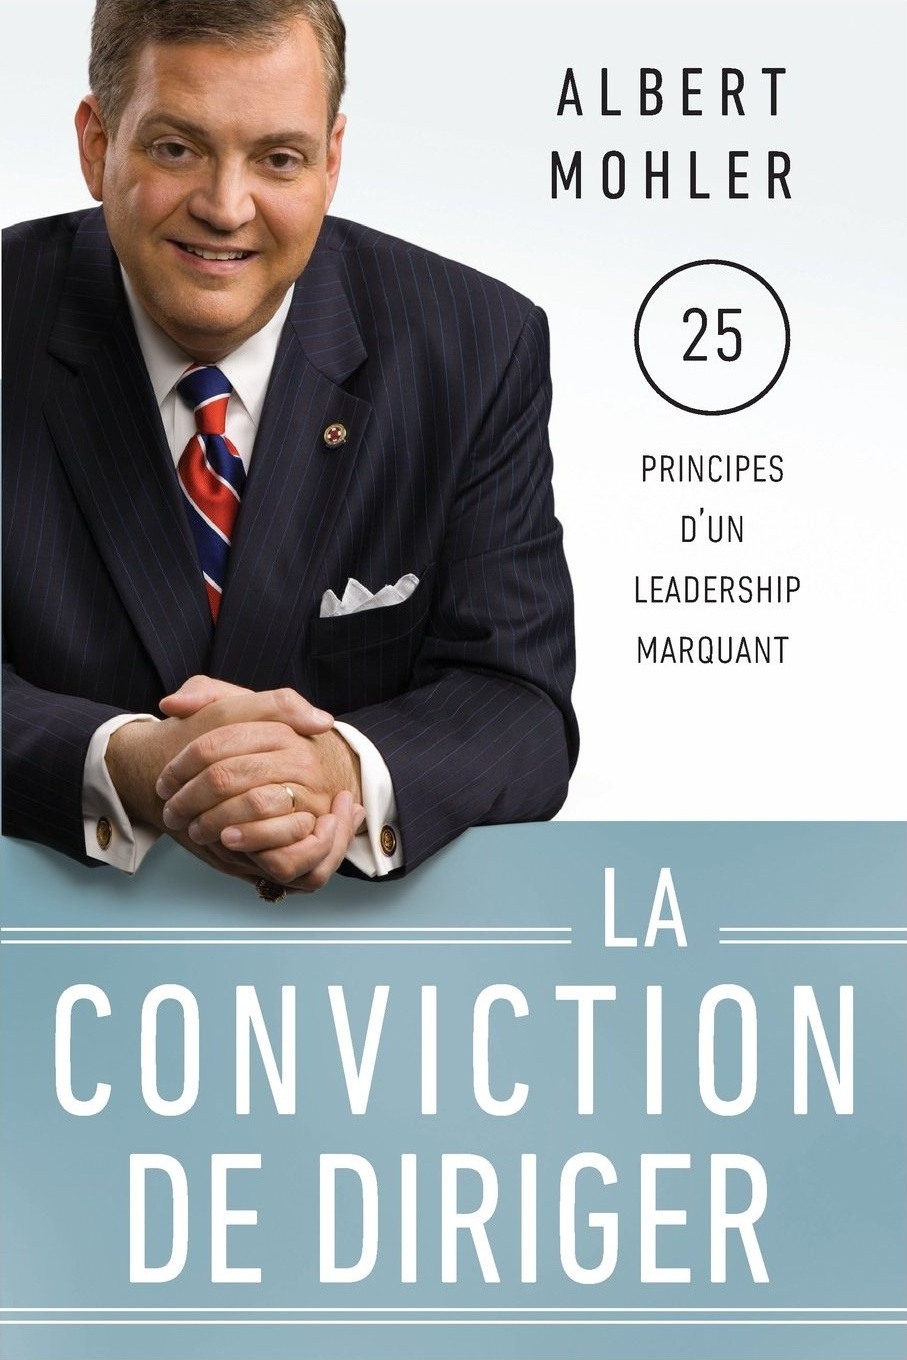 Conviction de diriger (La) - 25 principes d'un leadership marquant